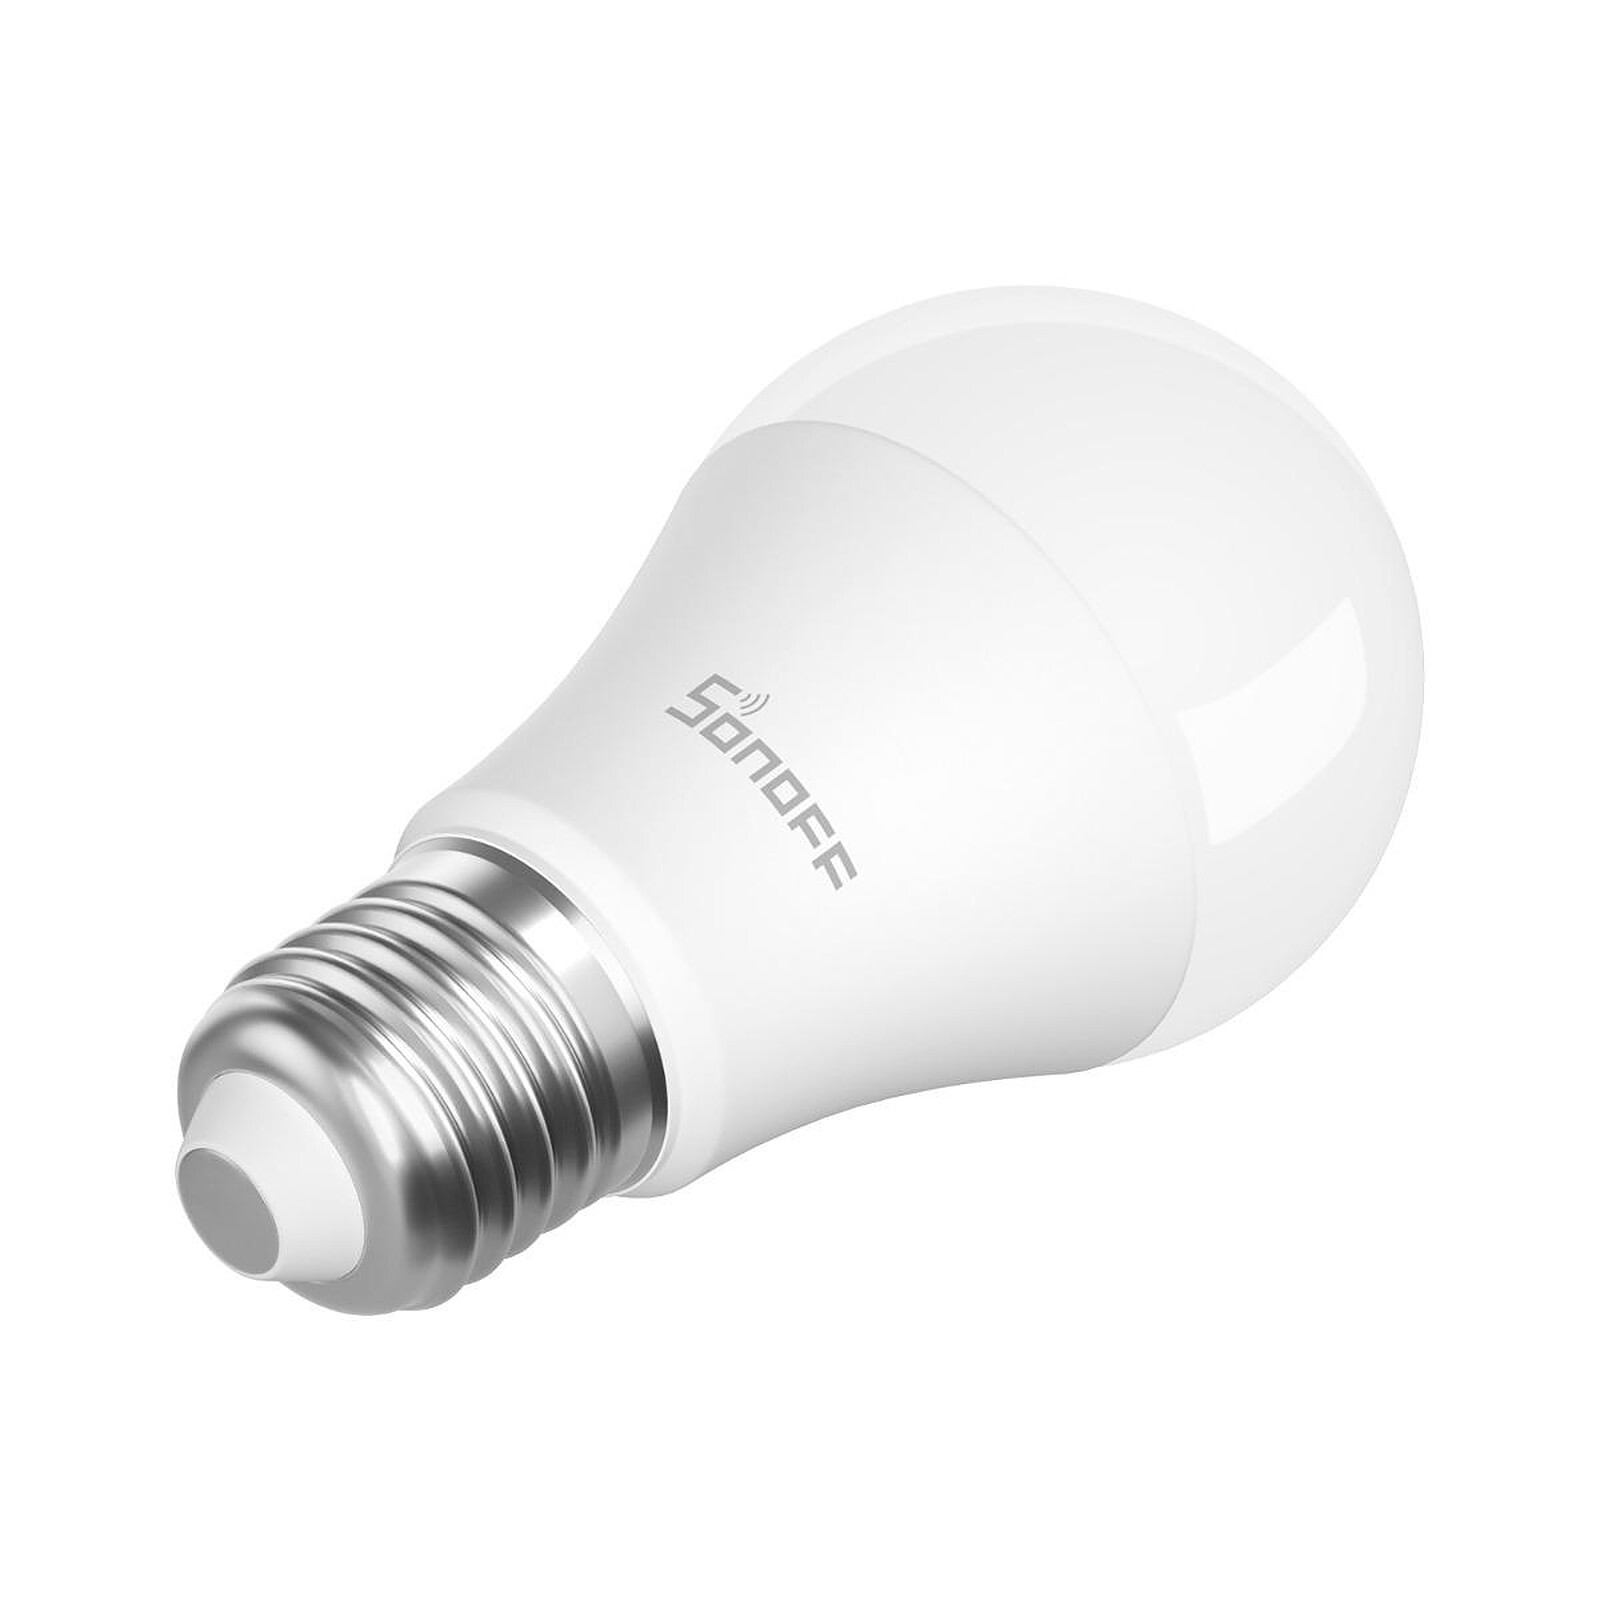 Ampoule intelligente A19  E26 Essentials compatible avec HomeKit